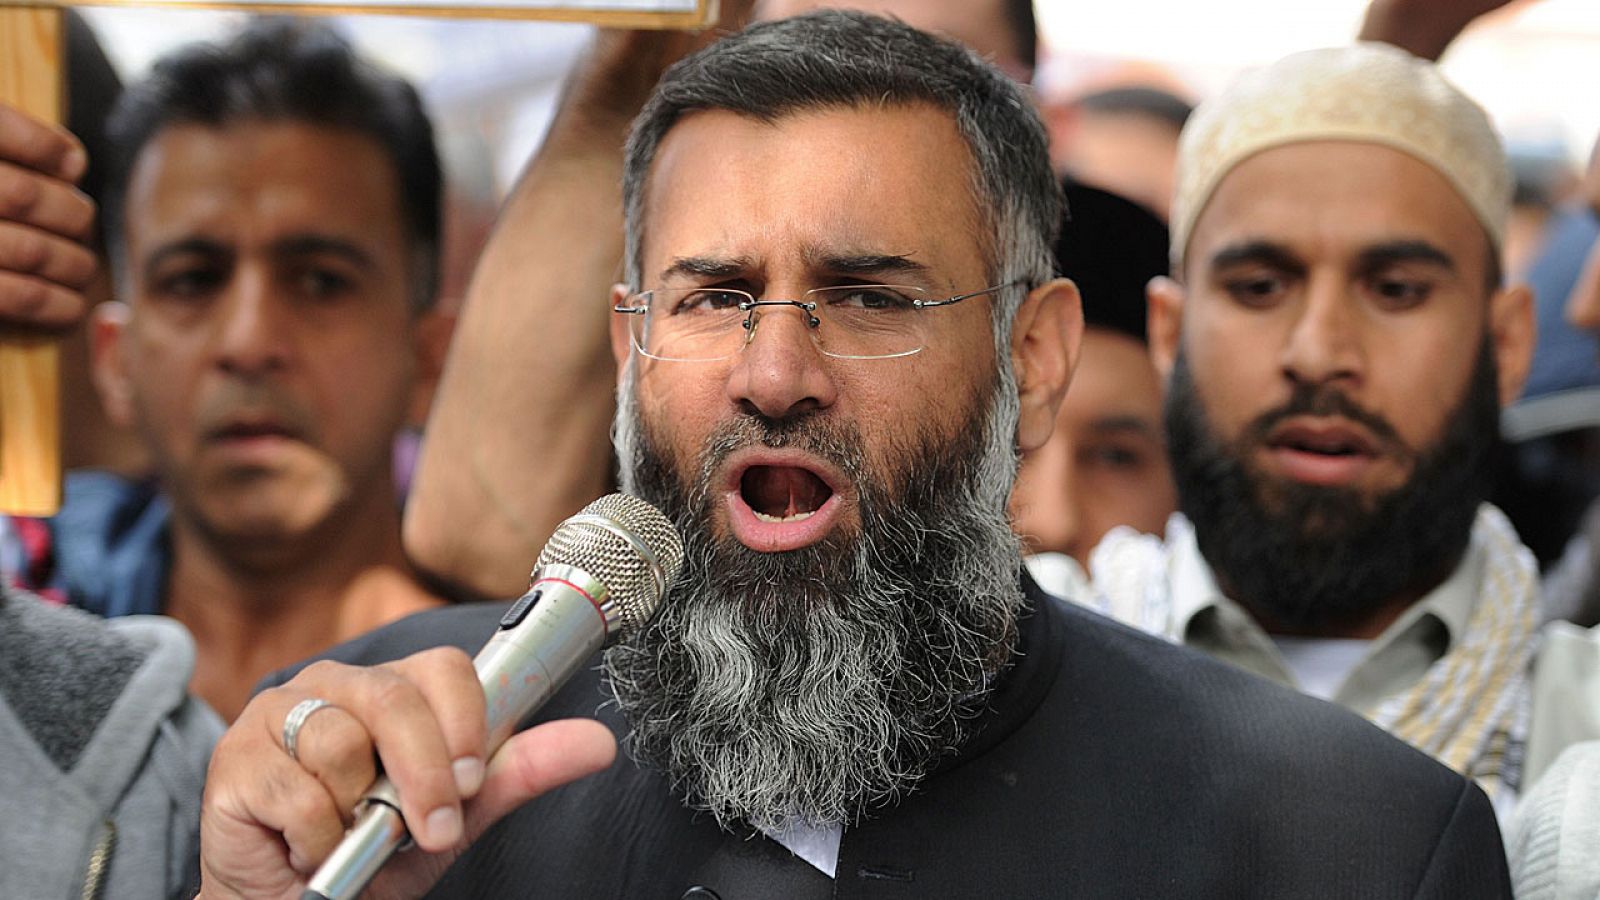 El clérigo radical Anjem Choudary ha sido condenado en Londres por apoyar al autodenominado Estado Islámico.